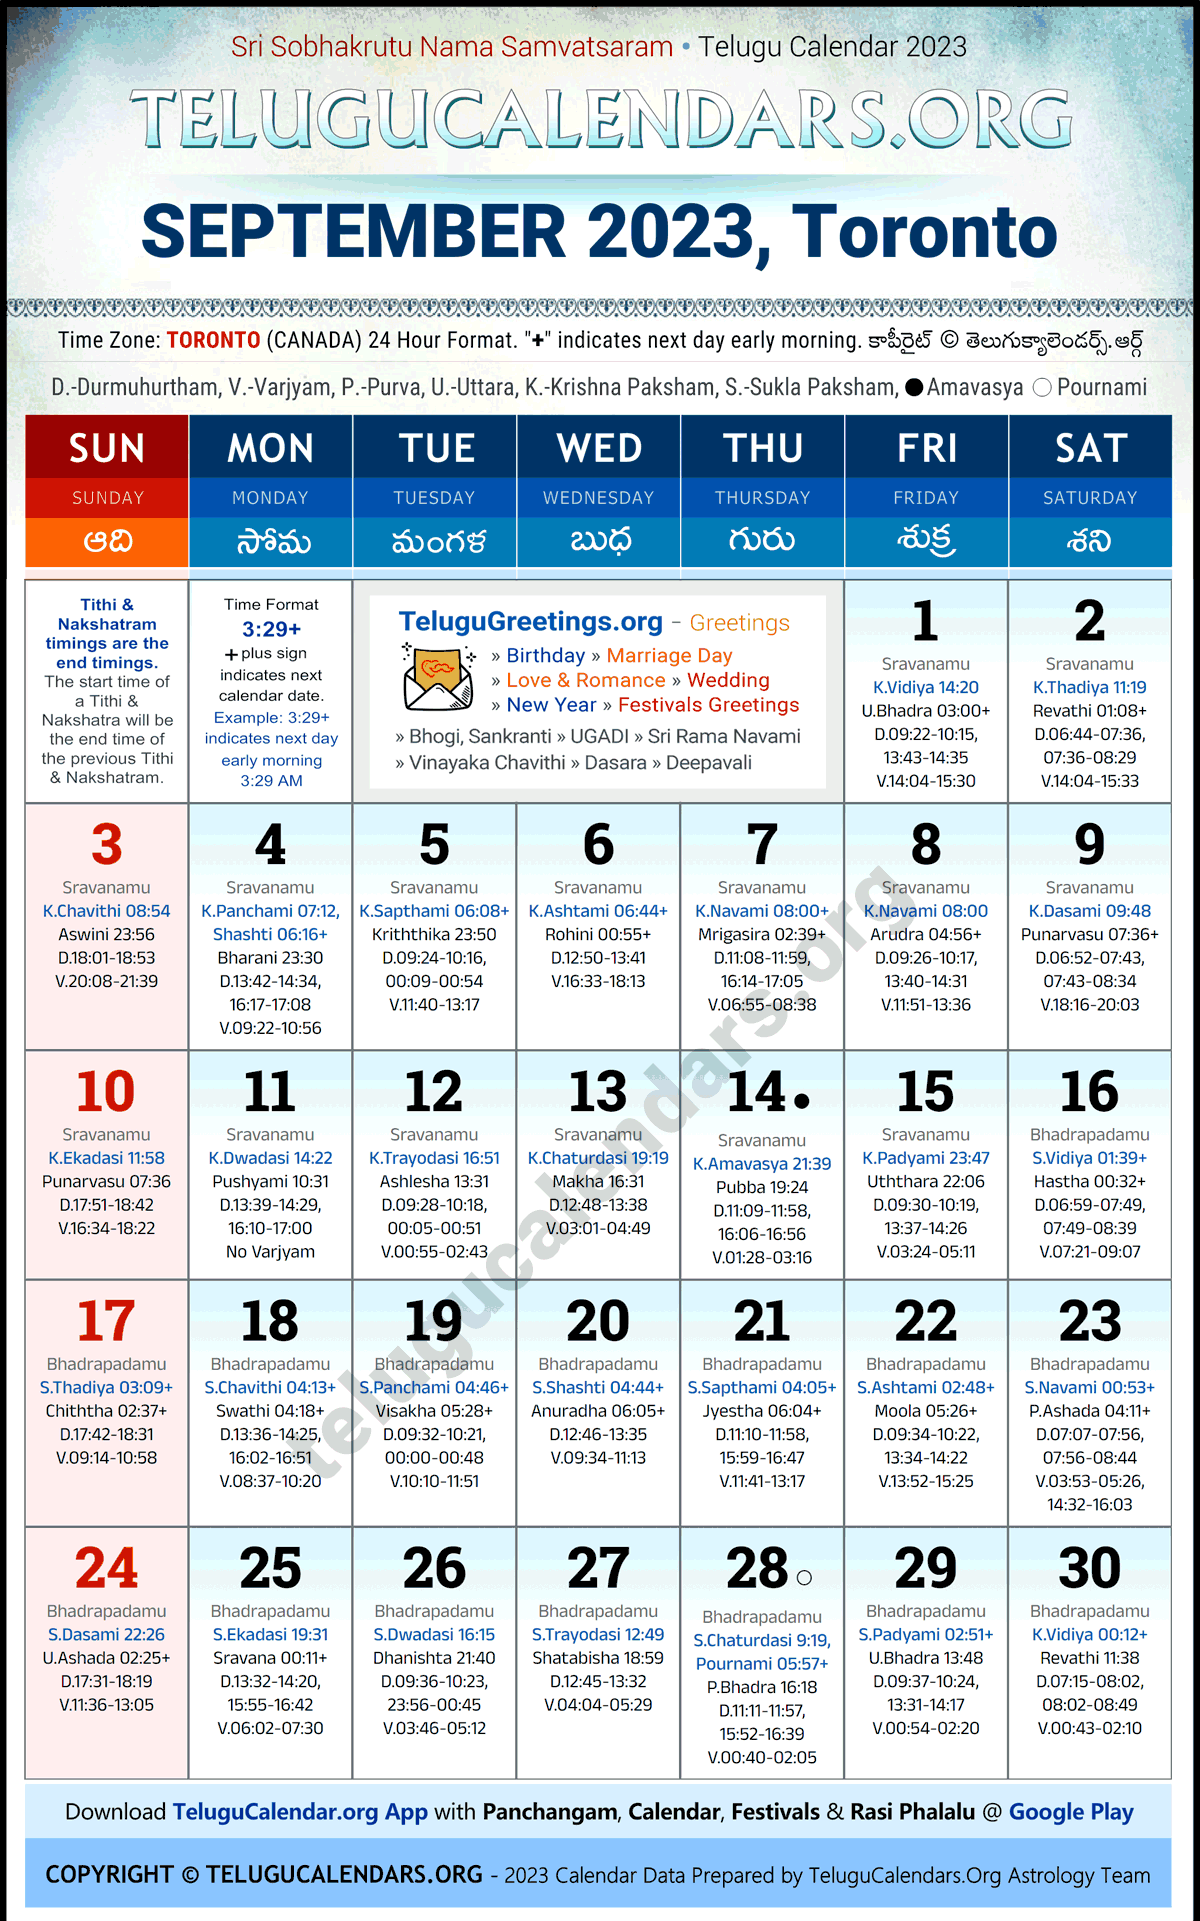 Telugu Calendar 2023 September Festivals for Toronto